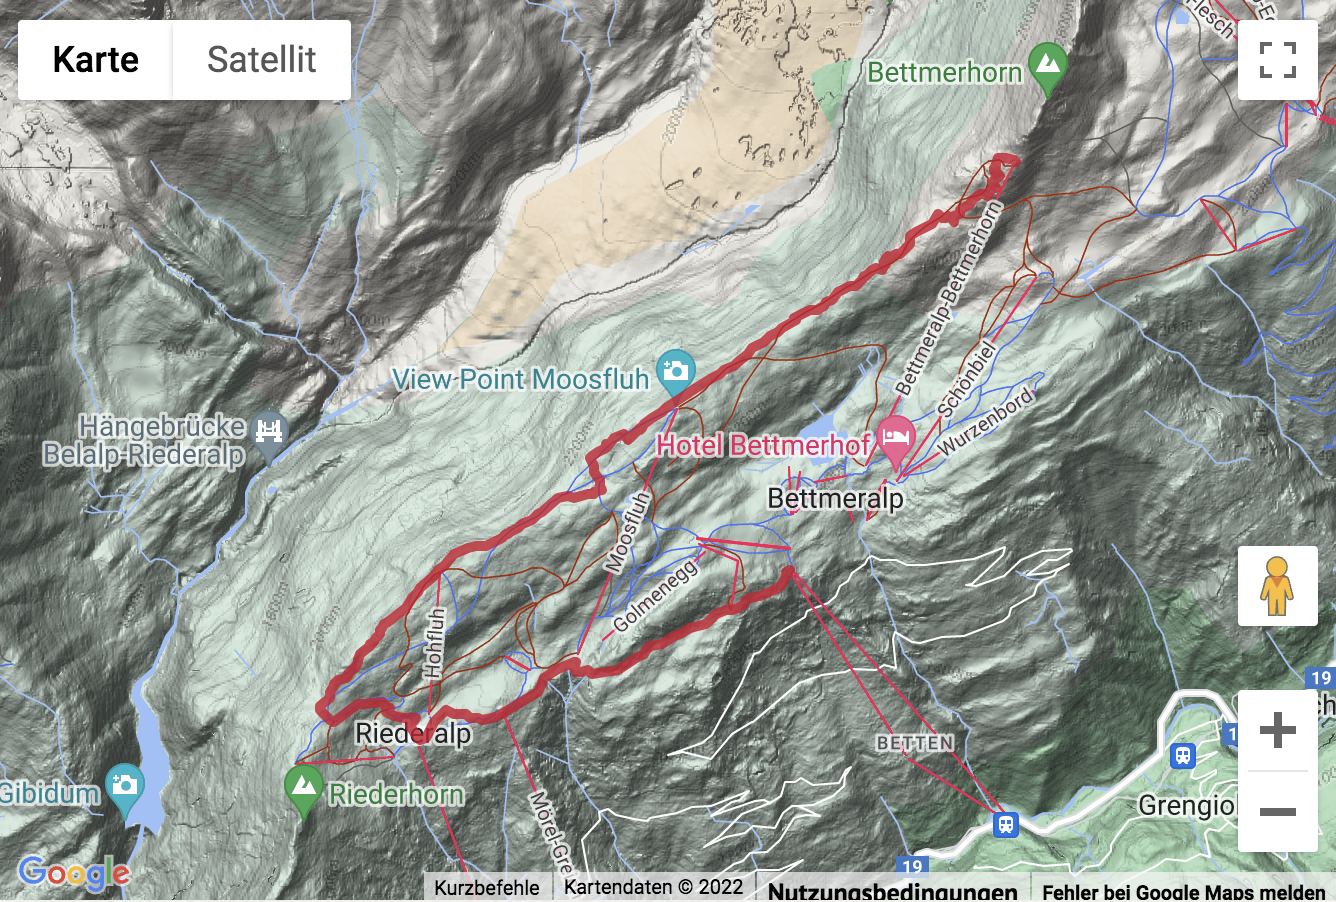 Carte de situation avec l'itinéraire pour la Randonnée de montagne de la Bettmeralp sur le Bettmerhorn